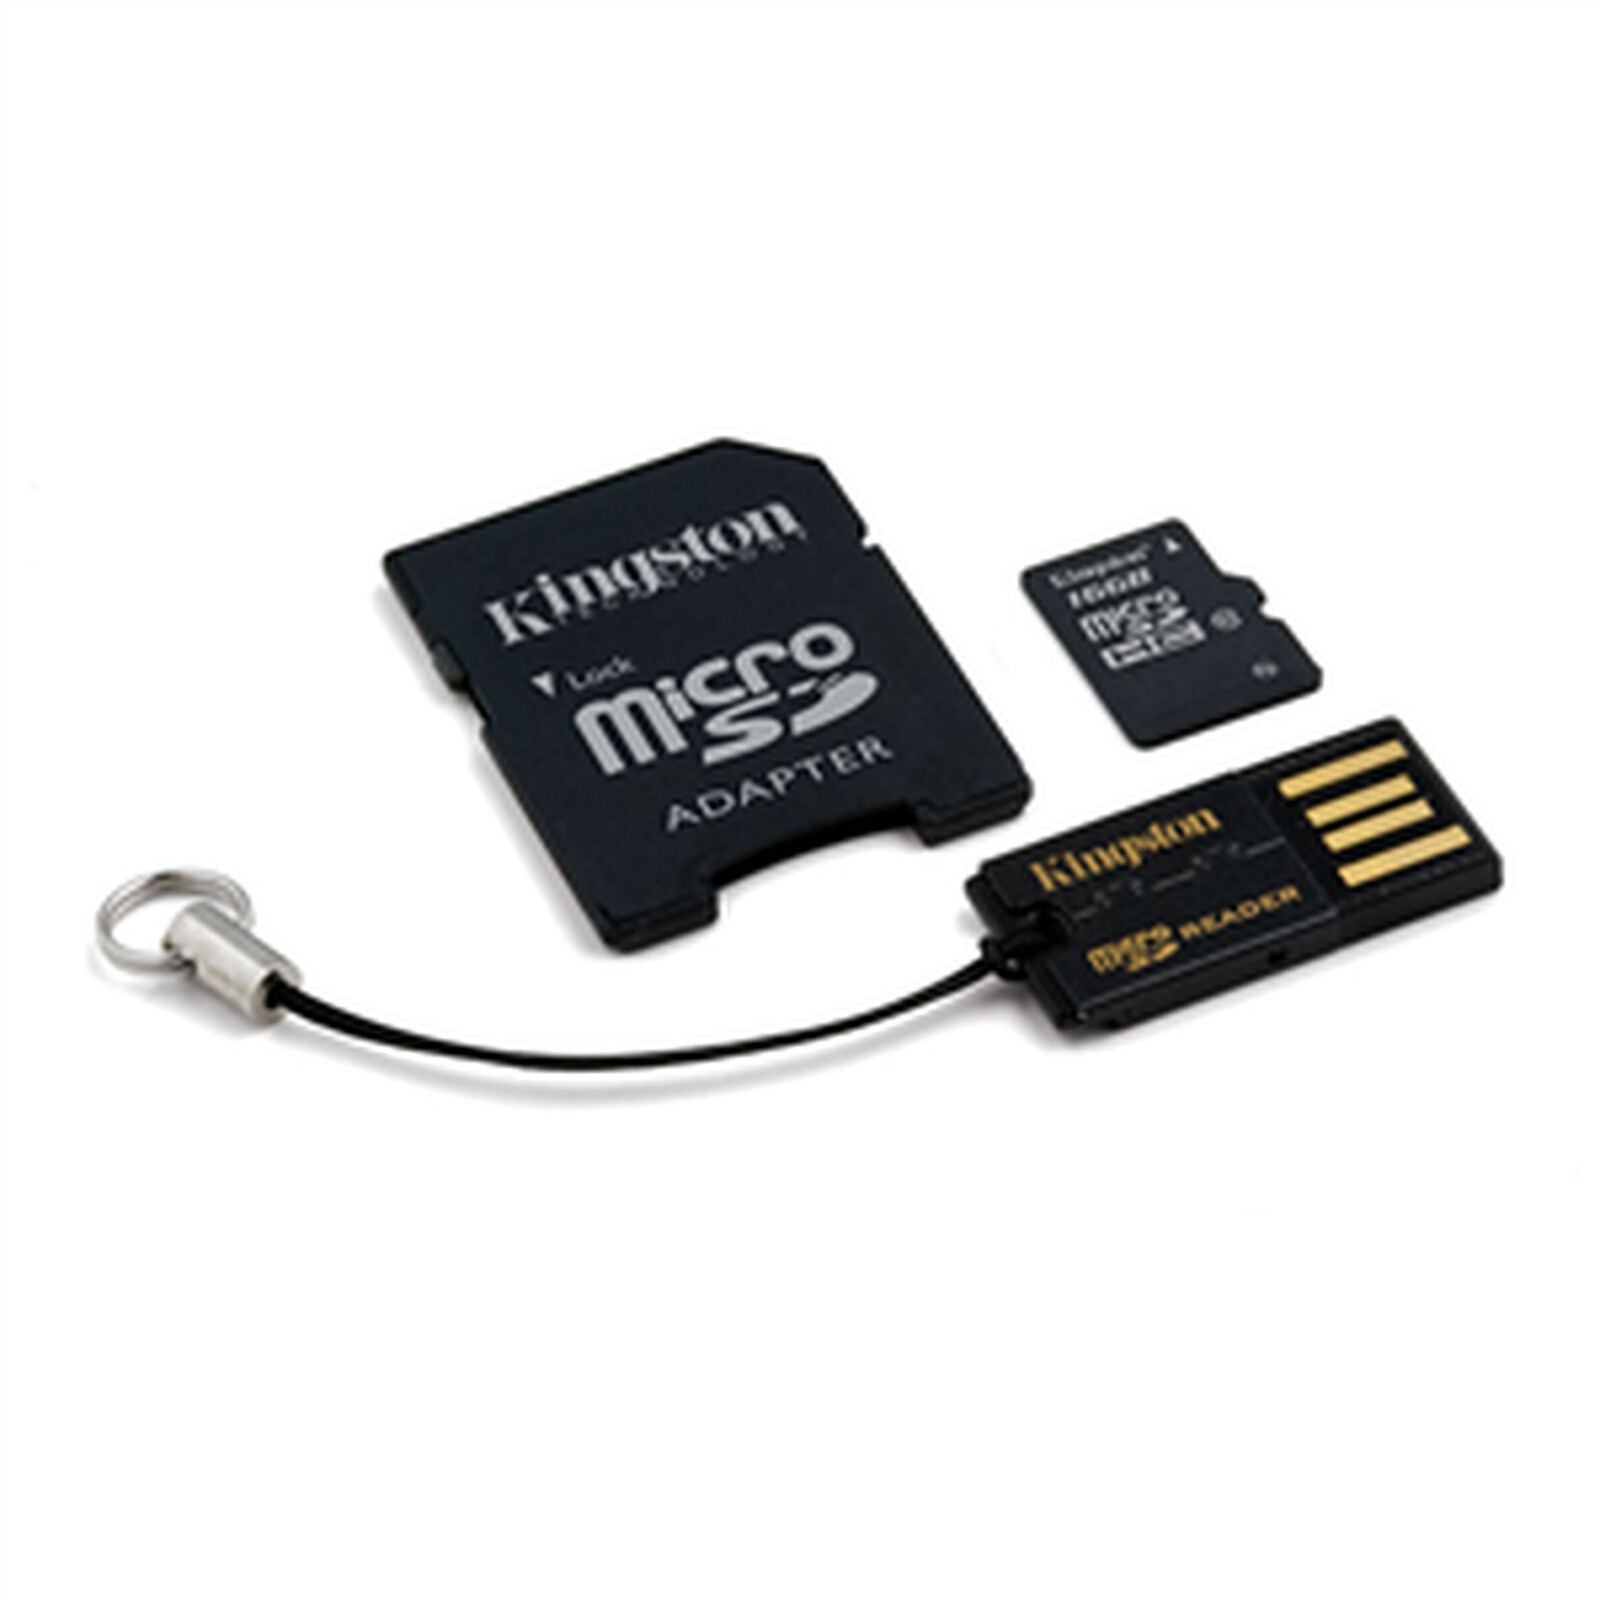 SanDisk Ultra microSD UHS-I U1 128 Go + Adaptateur SD (SDSQUA4-128G-GN6MT)  - Carte mémoire - Garantie 3 ans LDLC